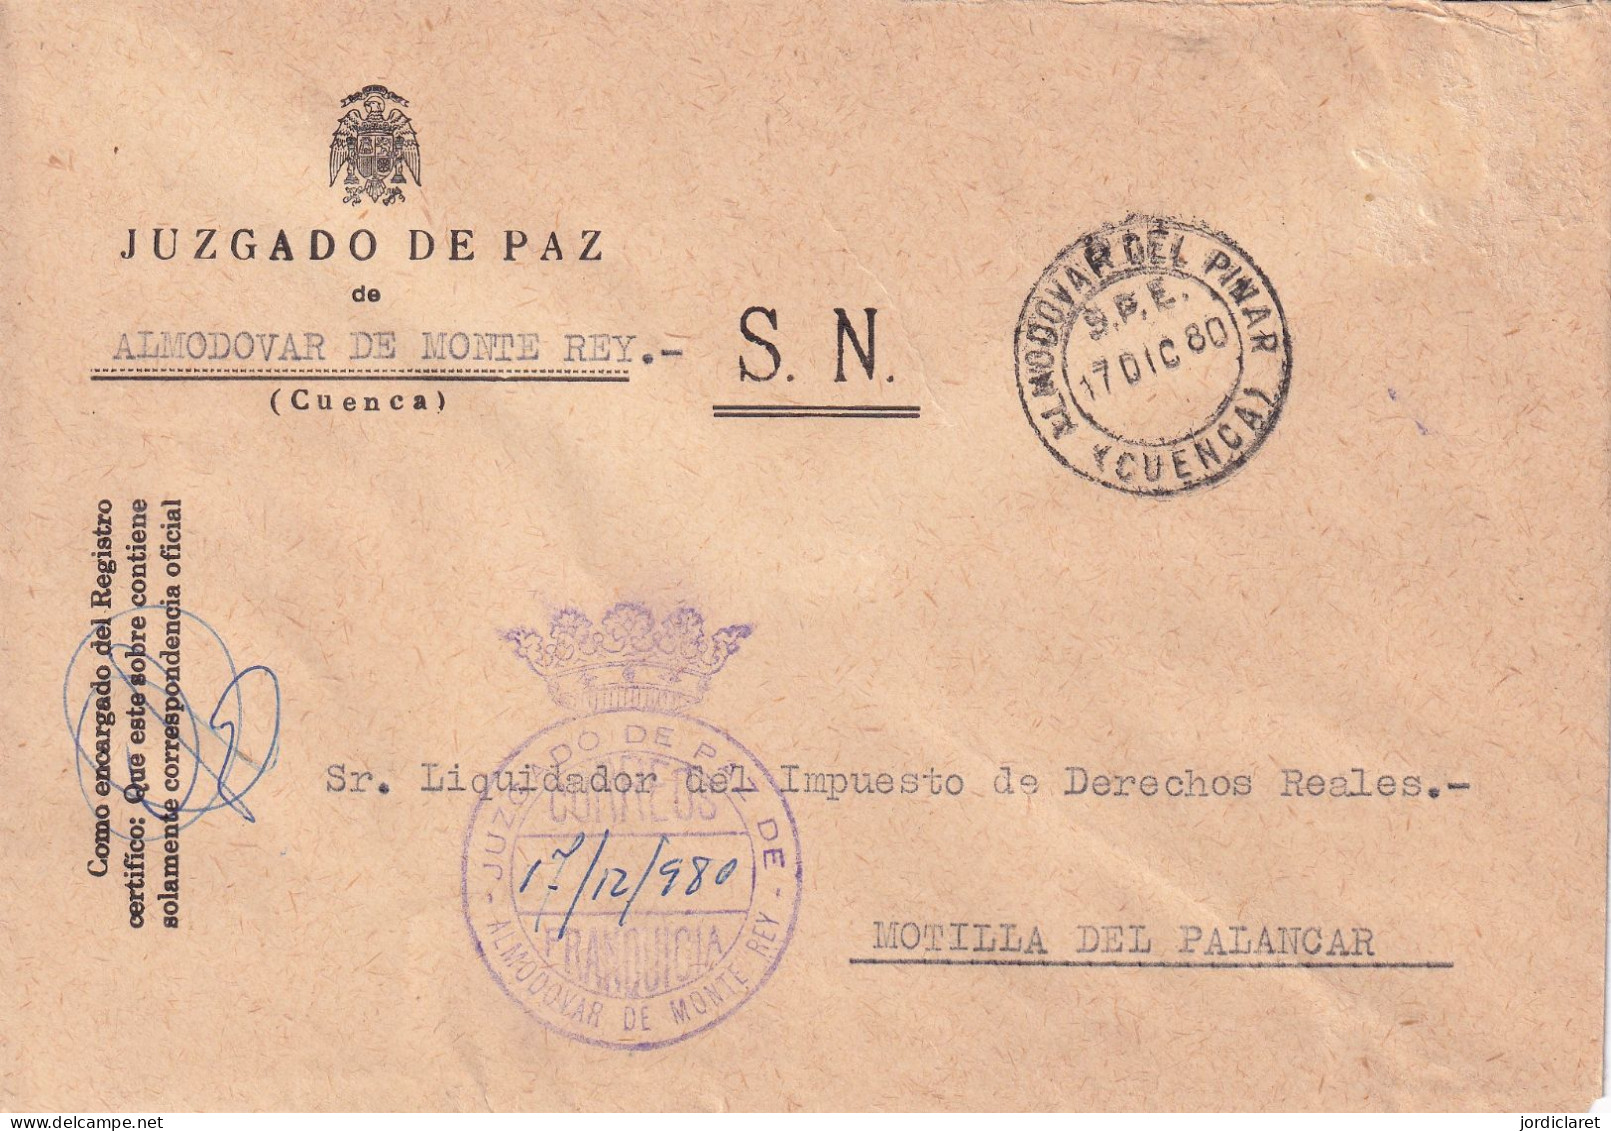 JUZGADO DE PAZ ALMODOVAR DE MONTE REY CUENCA 1980 - Franchise Postale